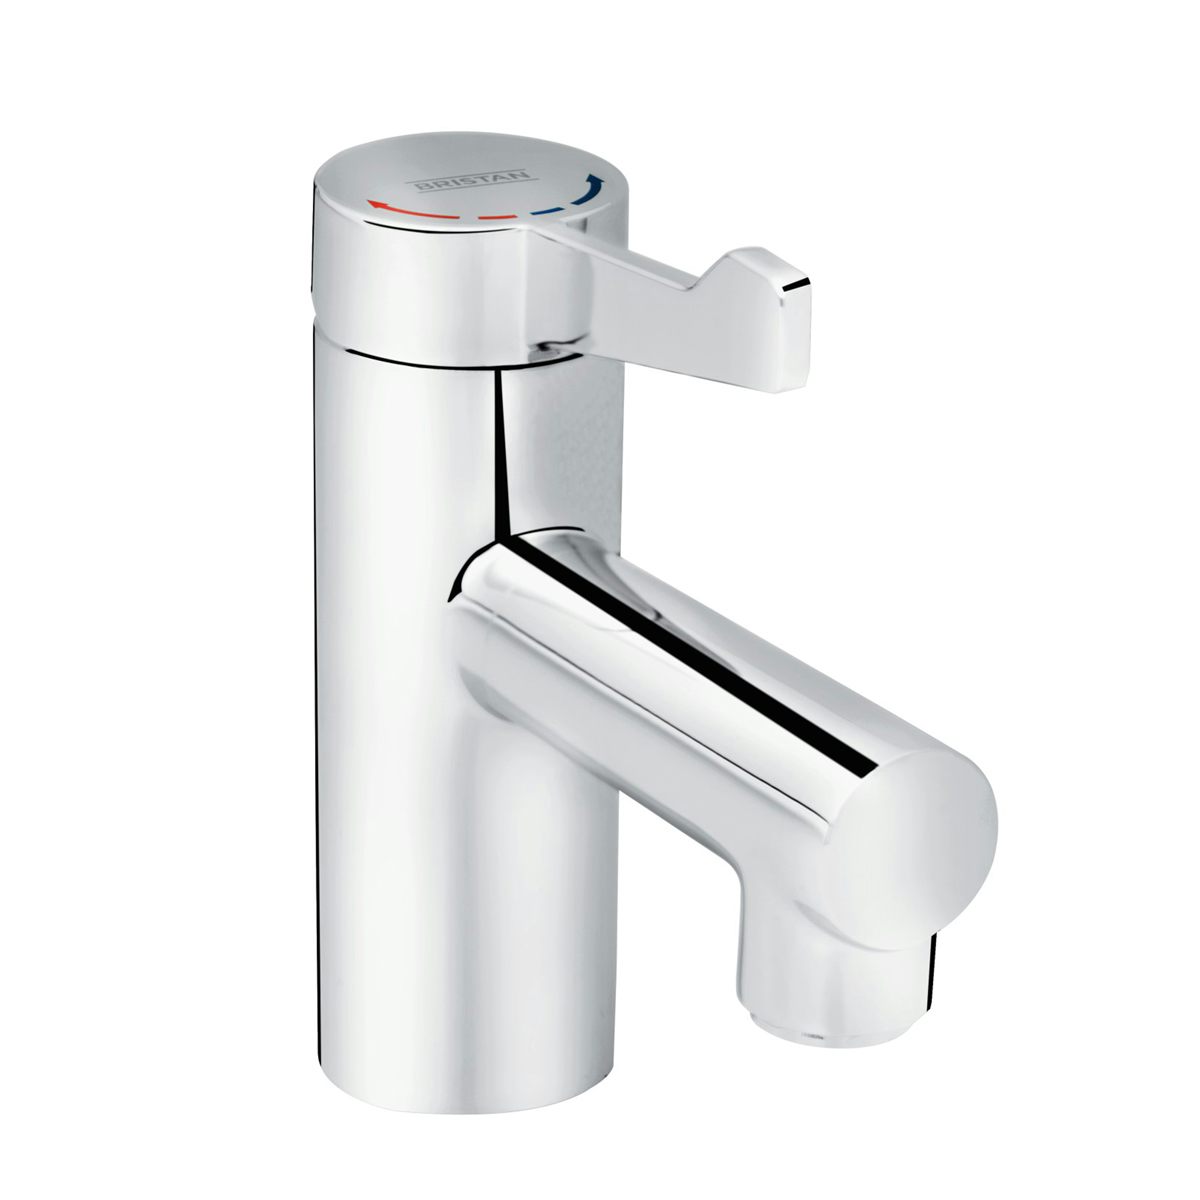 Bristan Solo TMV3 non-thermostatic healthcare basin mixer tap